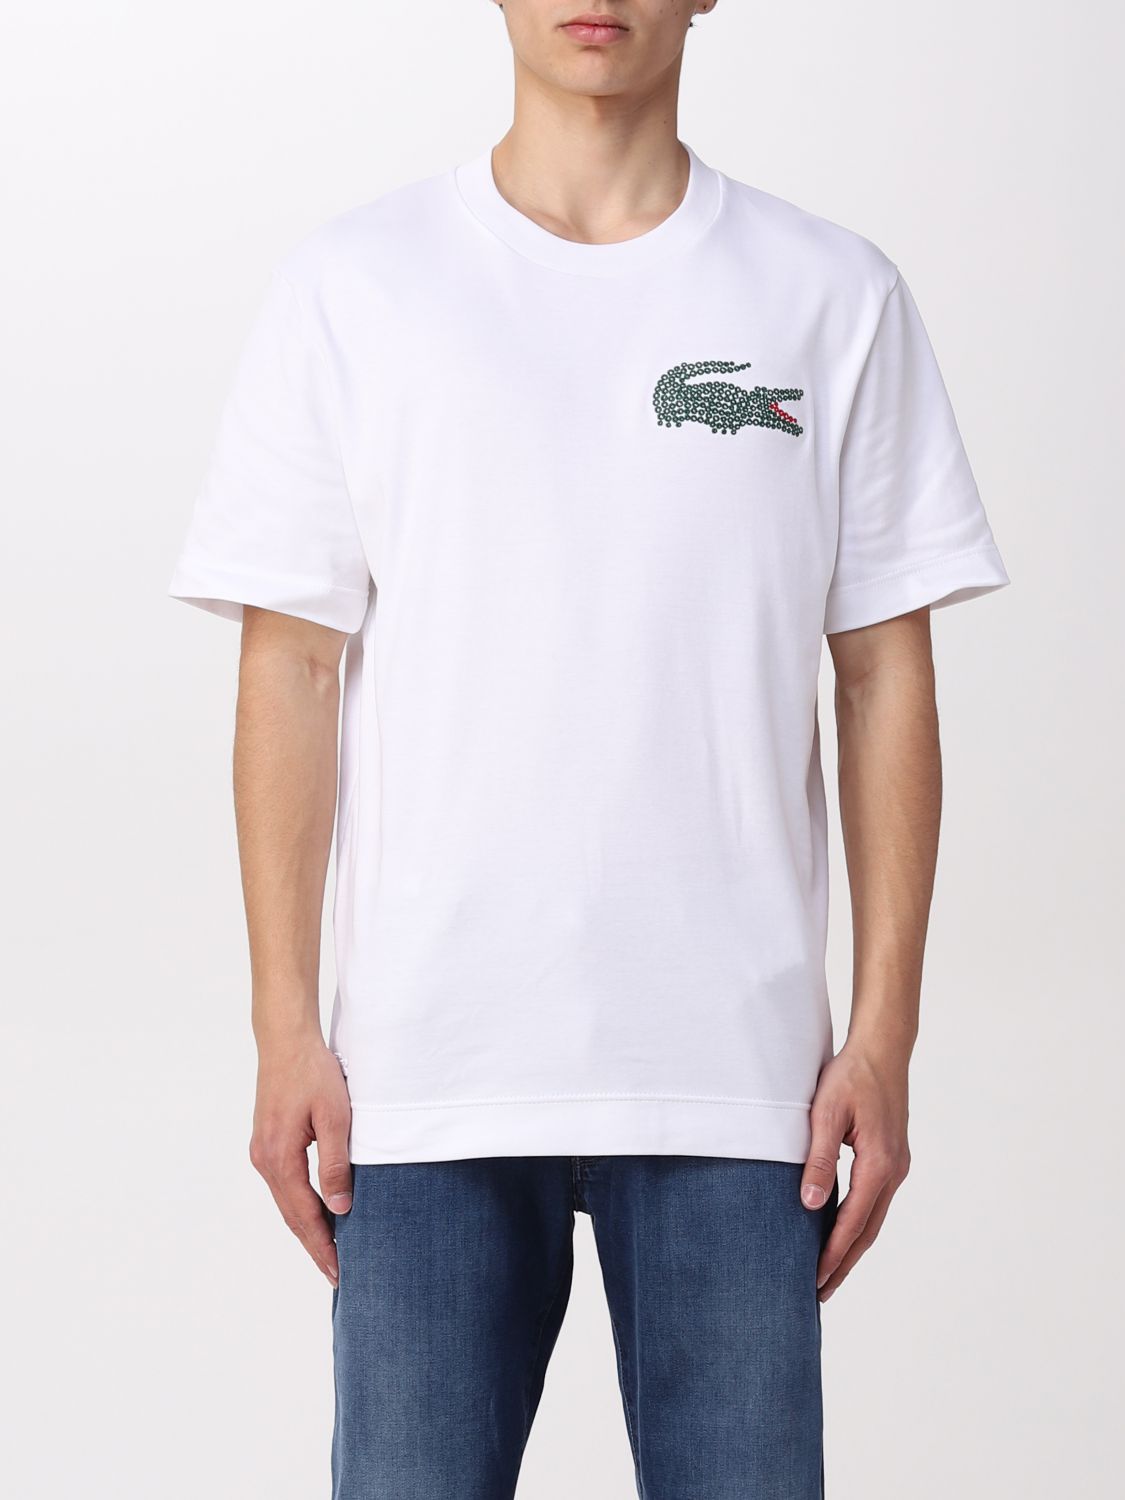 Lacoste Tシャツ メンズ ホワイト Giglio Comオンラインのlacoste Tシャツ Th2691